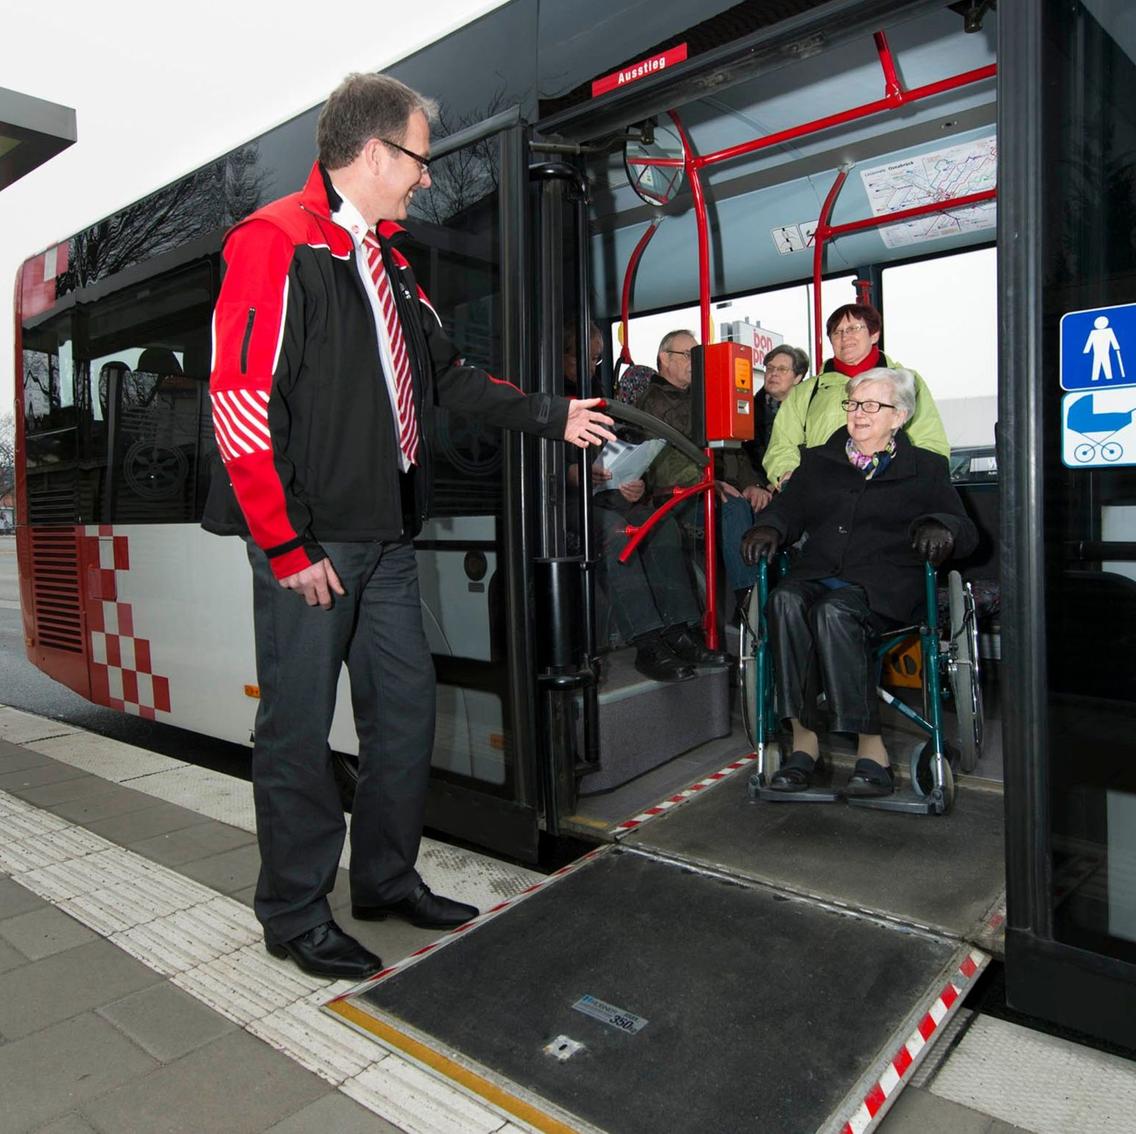 Busfahrer klappt Rollstuhlrampe für Frau im Rollstuhl aus